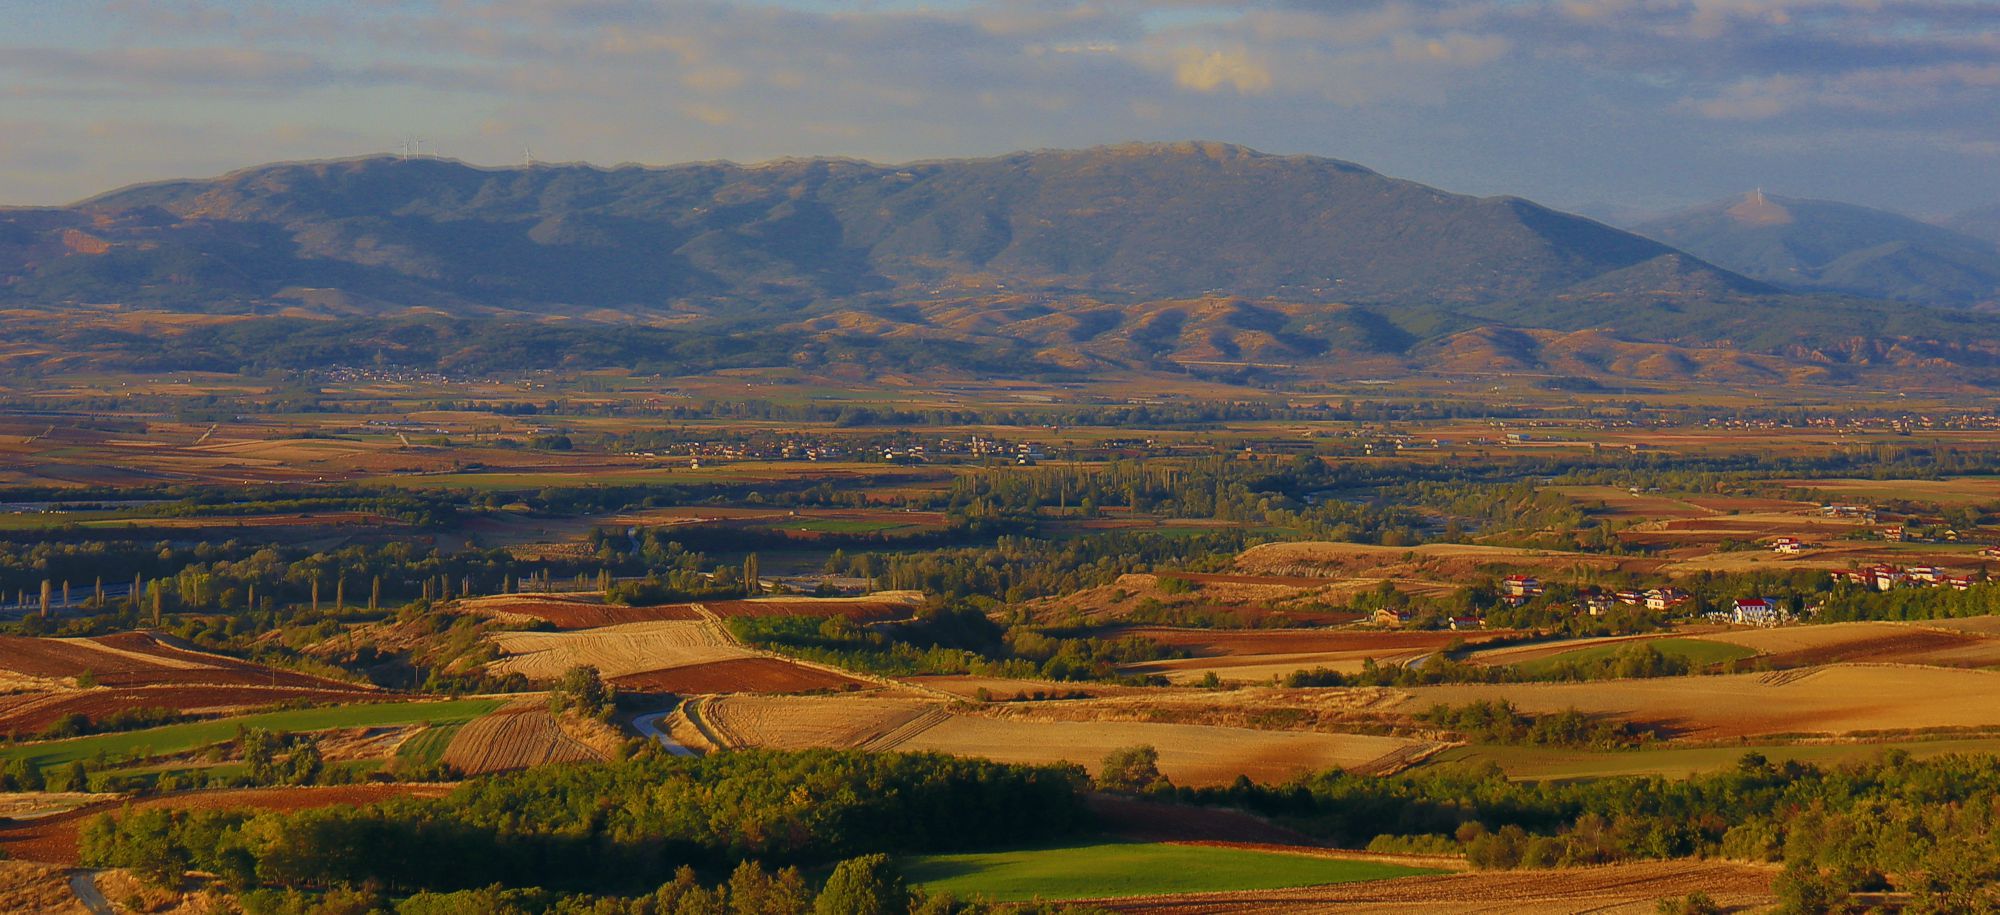 Φυσική γεωγραφία της Καστοριάς: Το περιλίνιο τοπίο από το χωριό Μελάνθιο